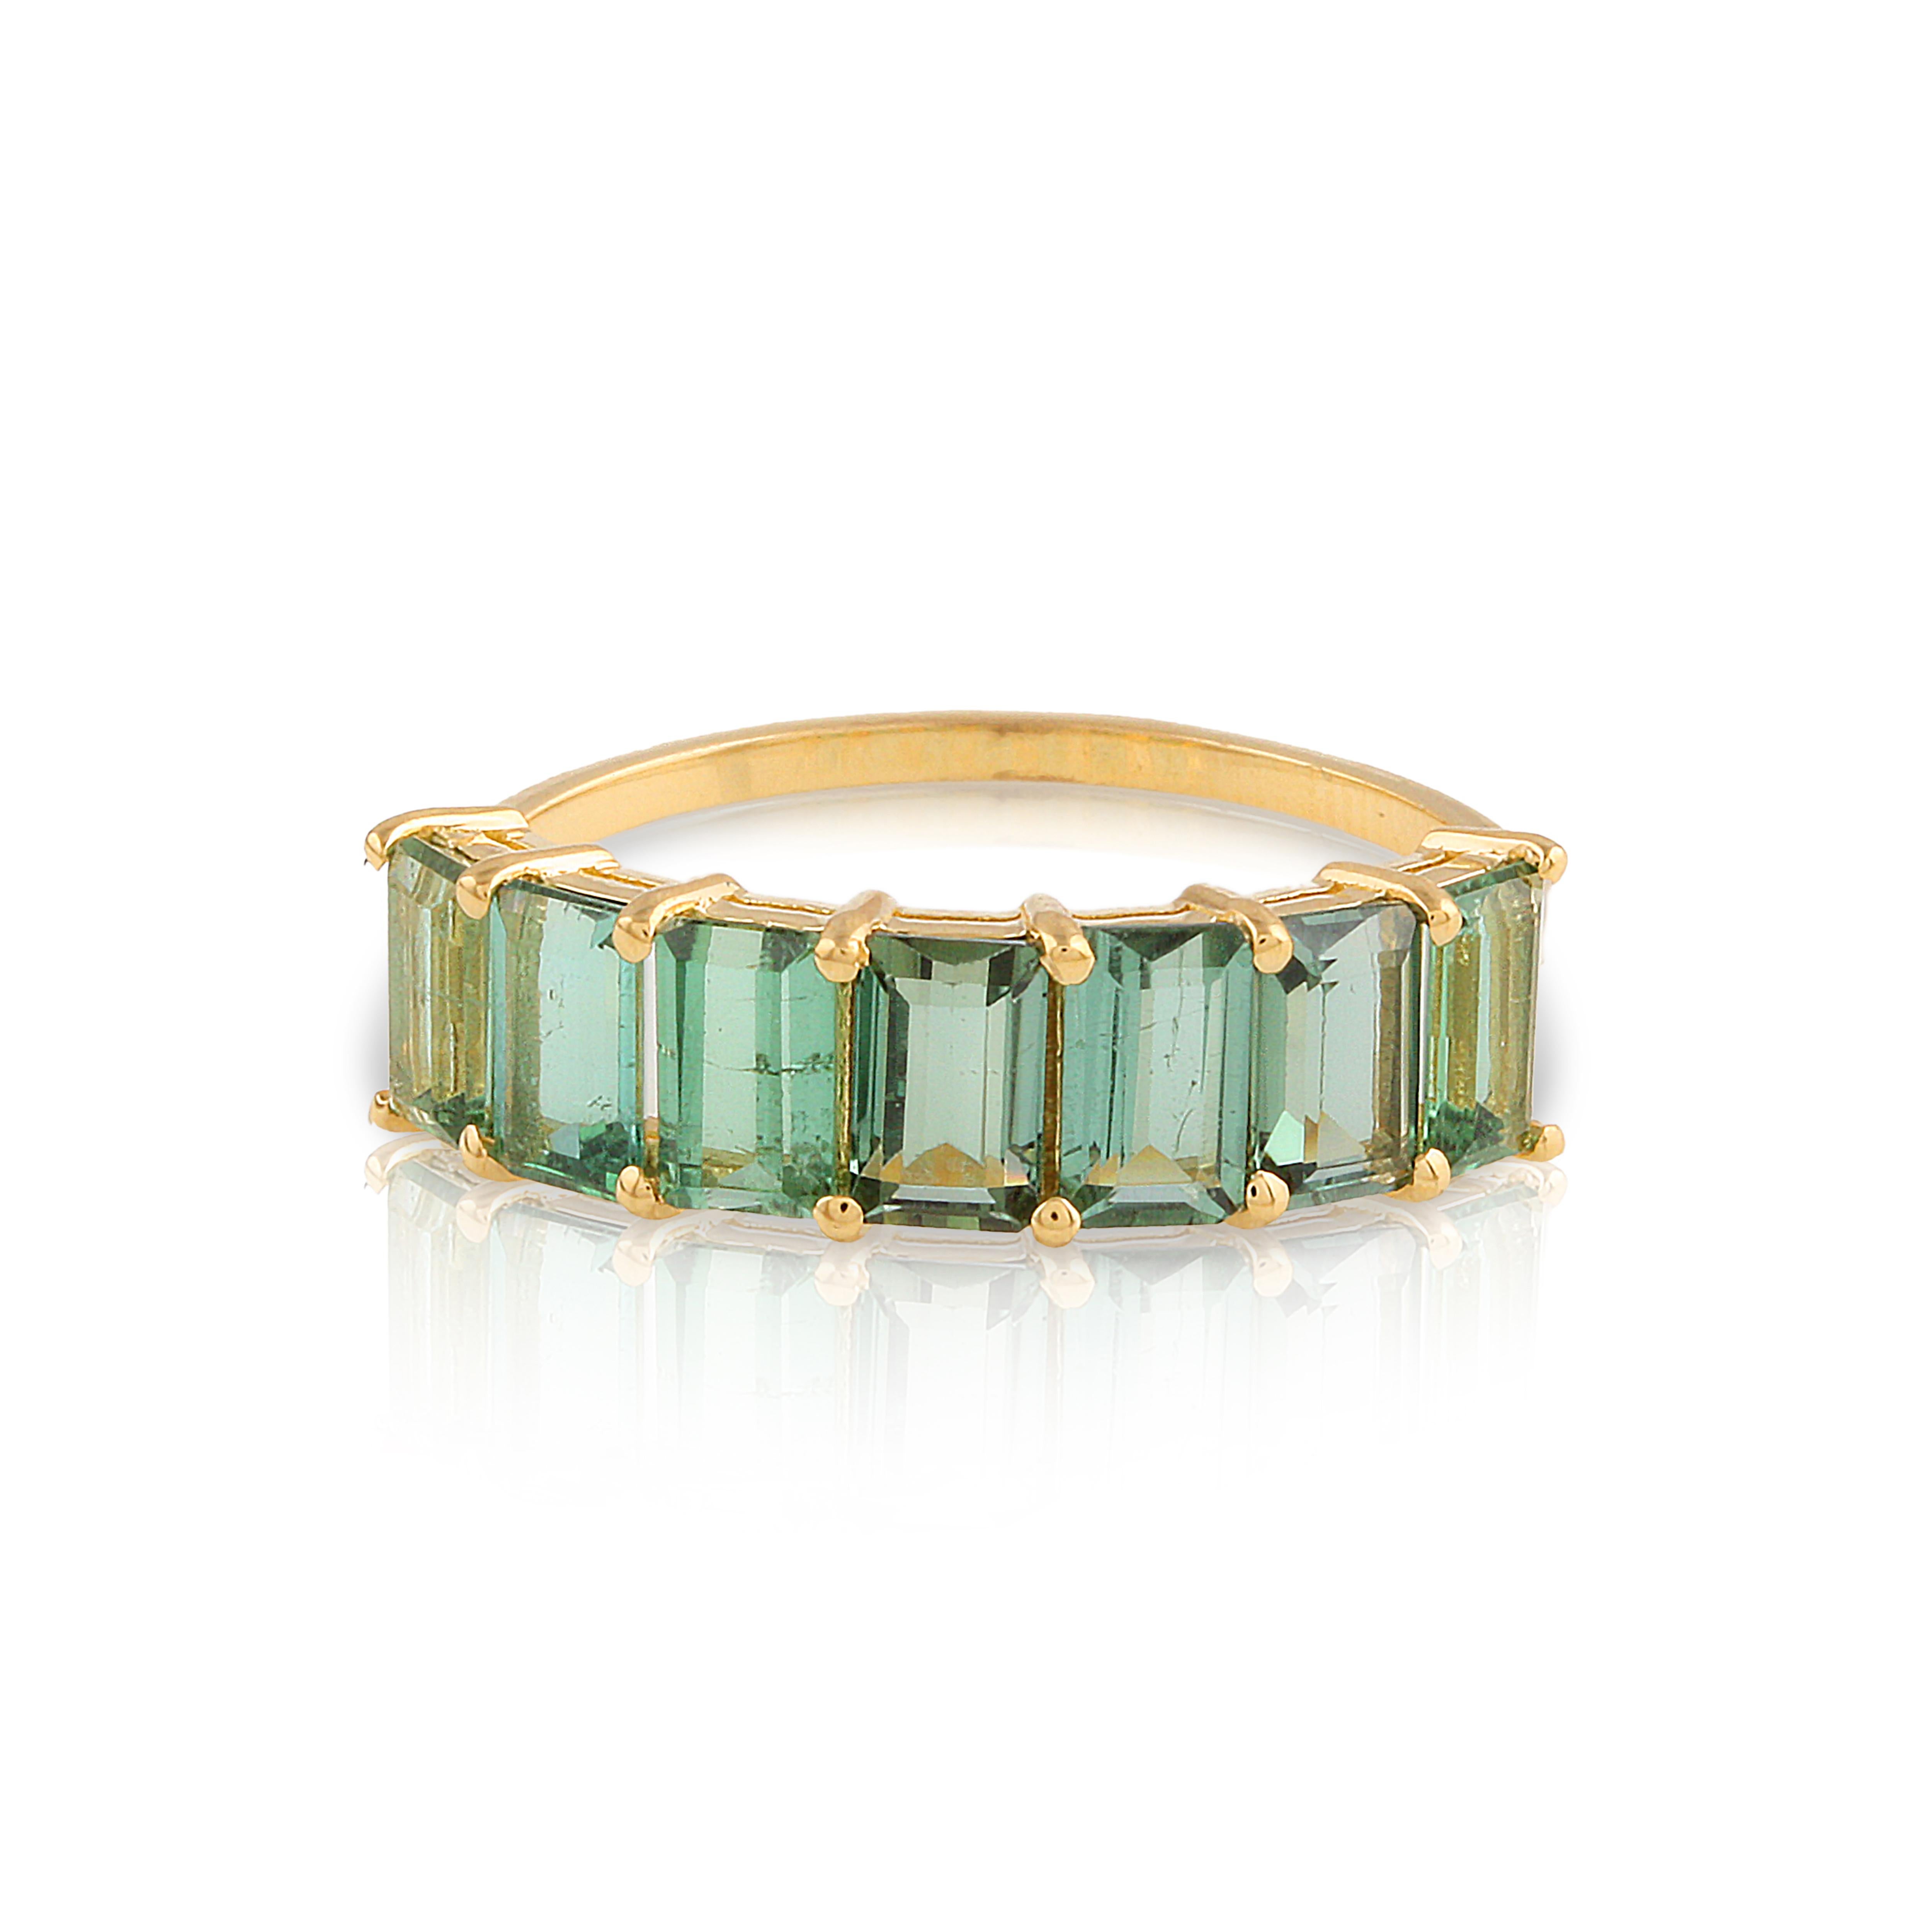 Tresor Beautiful Ring mit 2.00 Karat grünem Turmalin. Die Ringe sind eine Ode an die luxuriöse und doch klassische Schönheit mit funkelnden Edelsteinen und femininen Farbtönen. Ihr zeitgemäßes und modernes Design macht sie perfekt und vielseitig zu